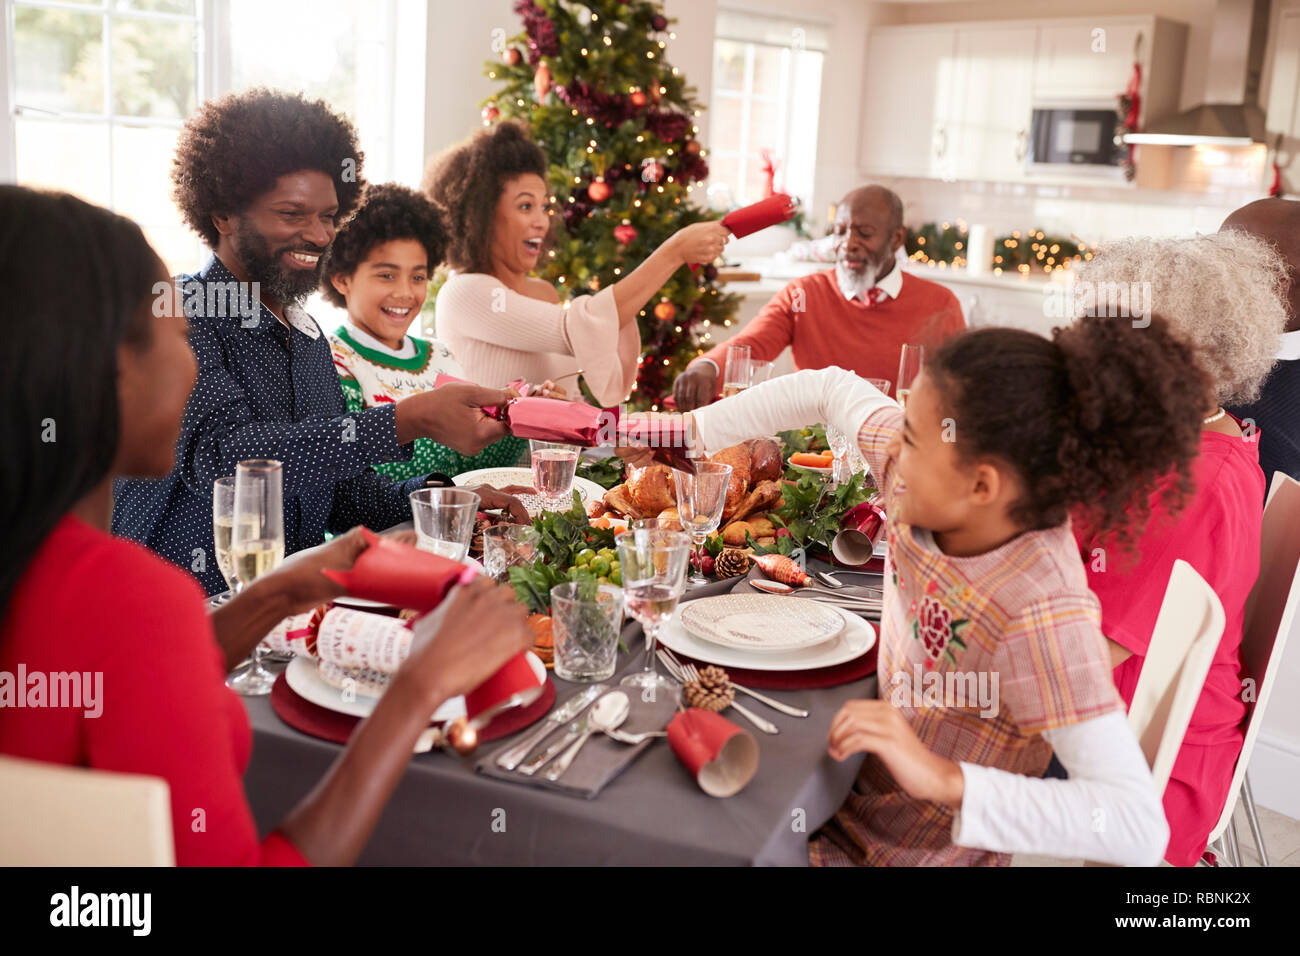 Course mixte, multi generation family having fun tirant sur des craquelins à la table de dîner de Noël Banque D'Images